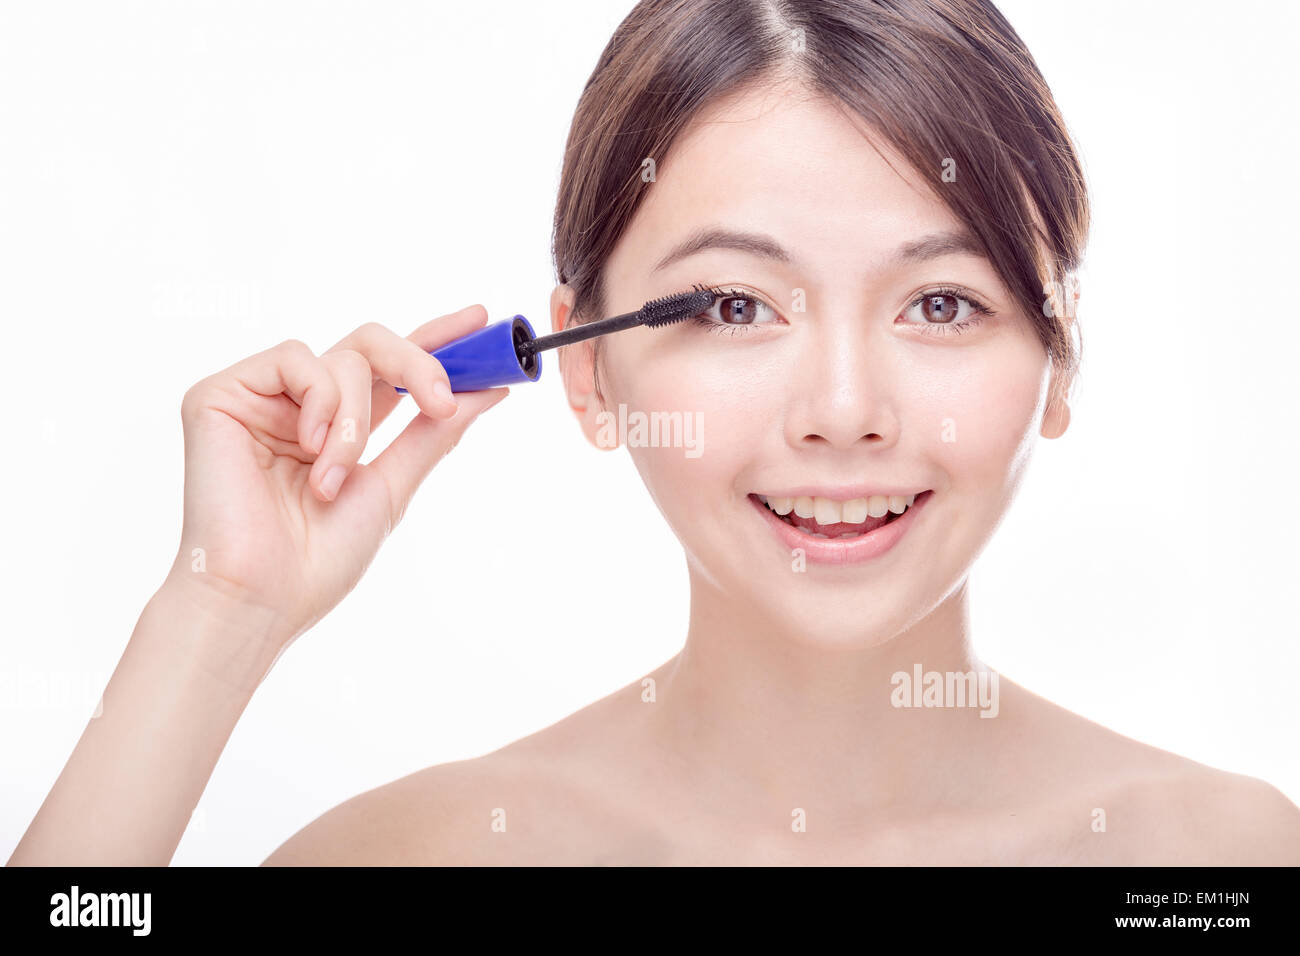 Chinese woman putting mascara on eyelashes Stock Photo